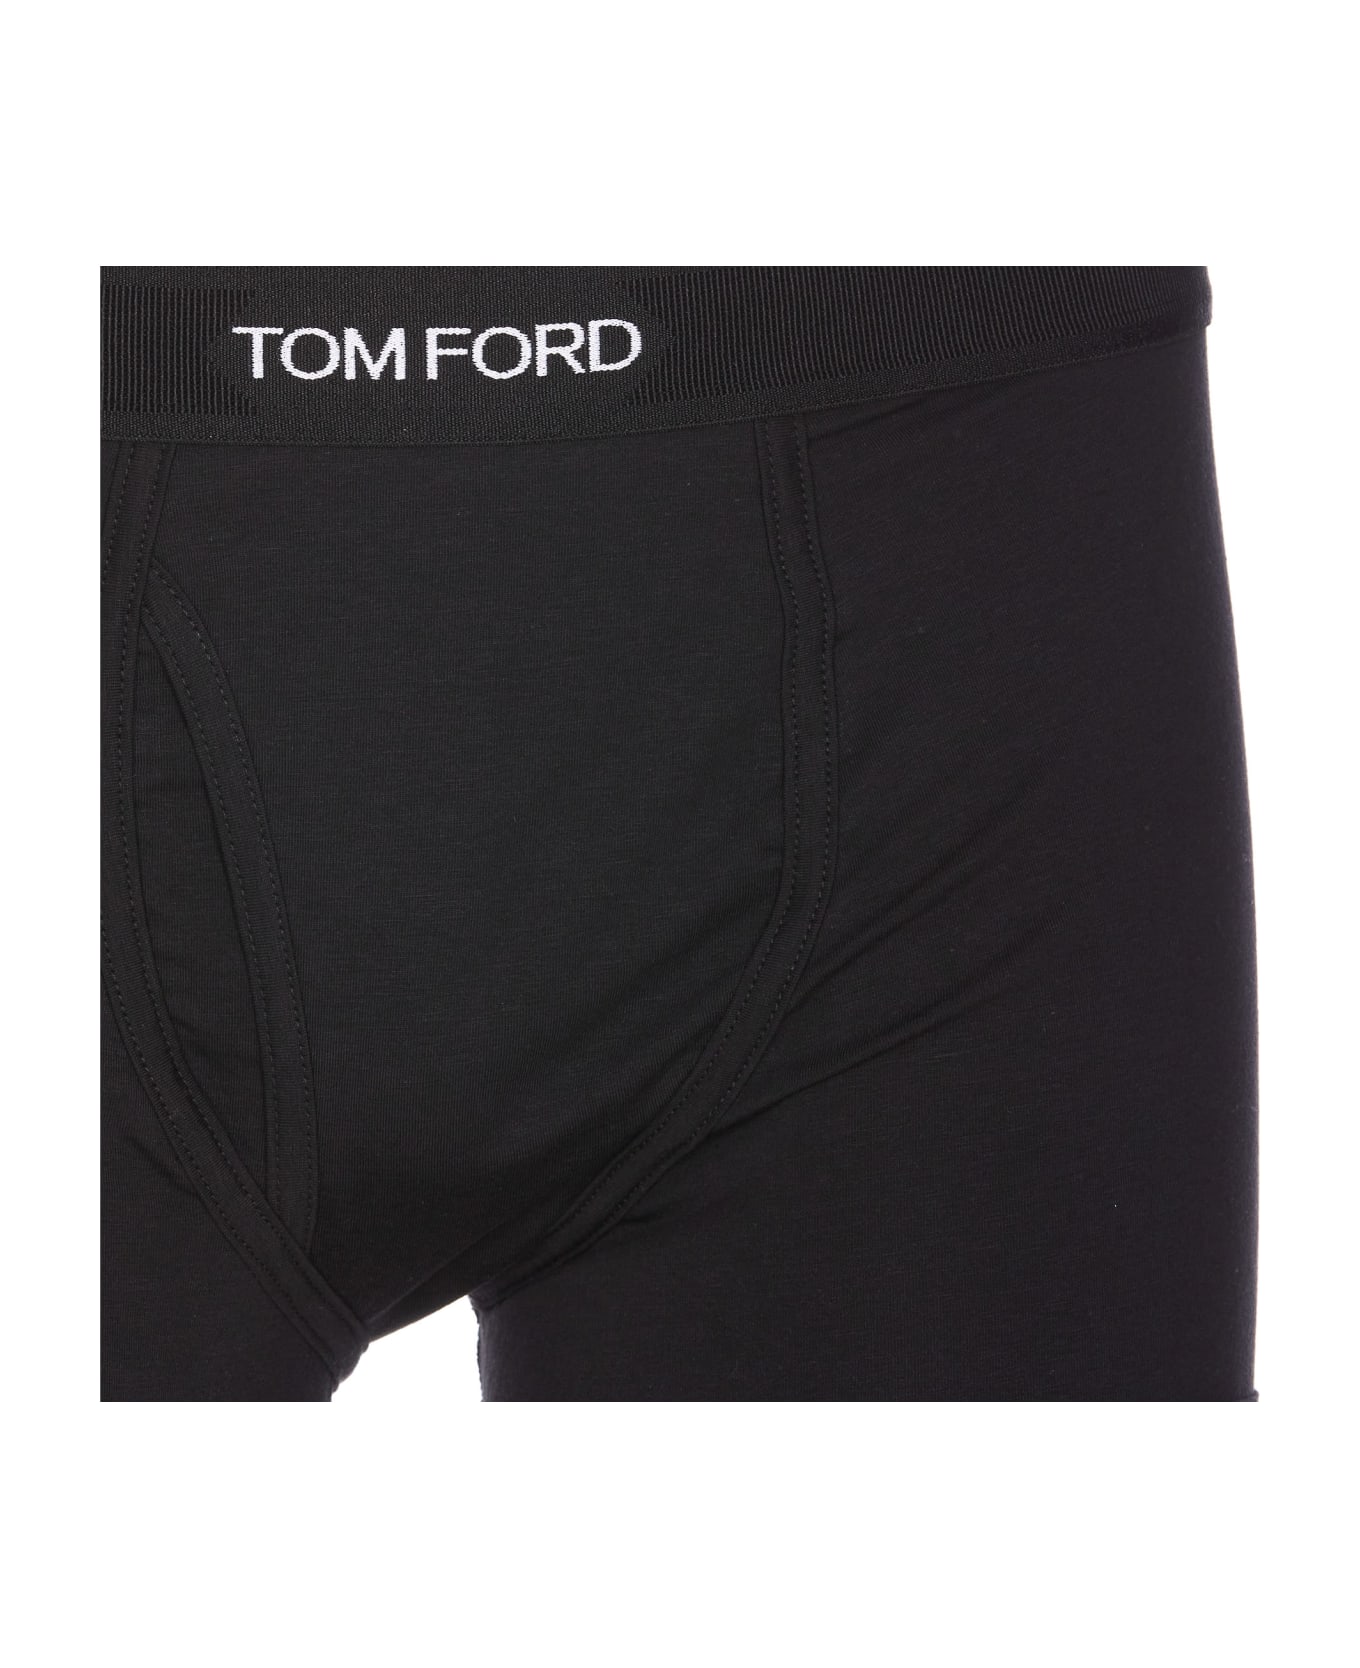 Tom Ford Logo Boxer - Black